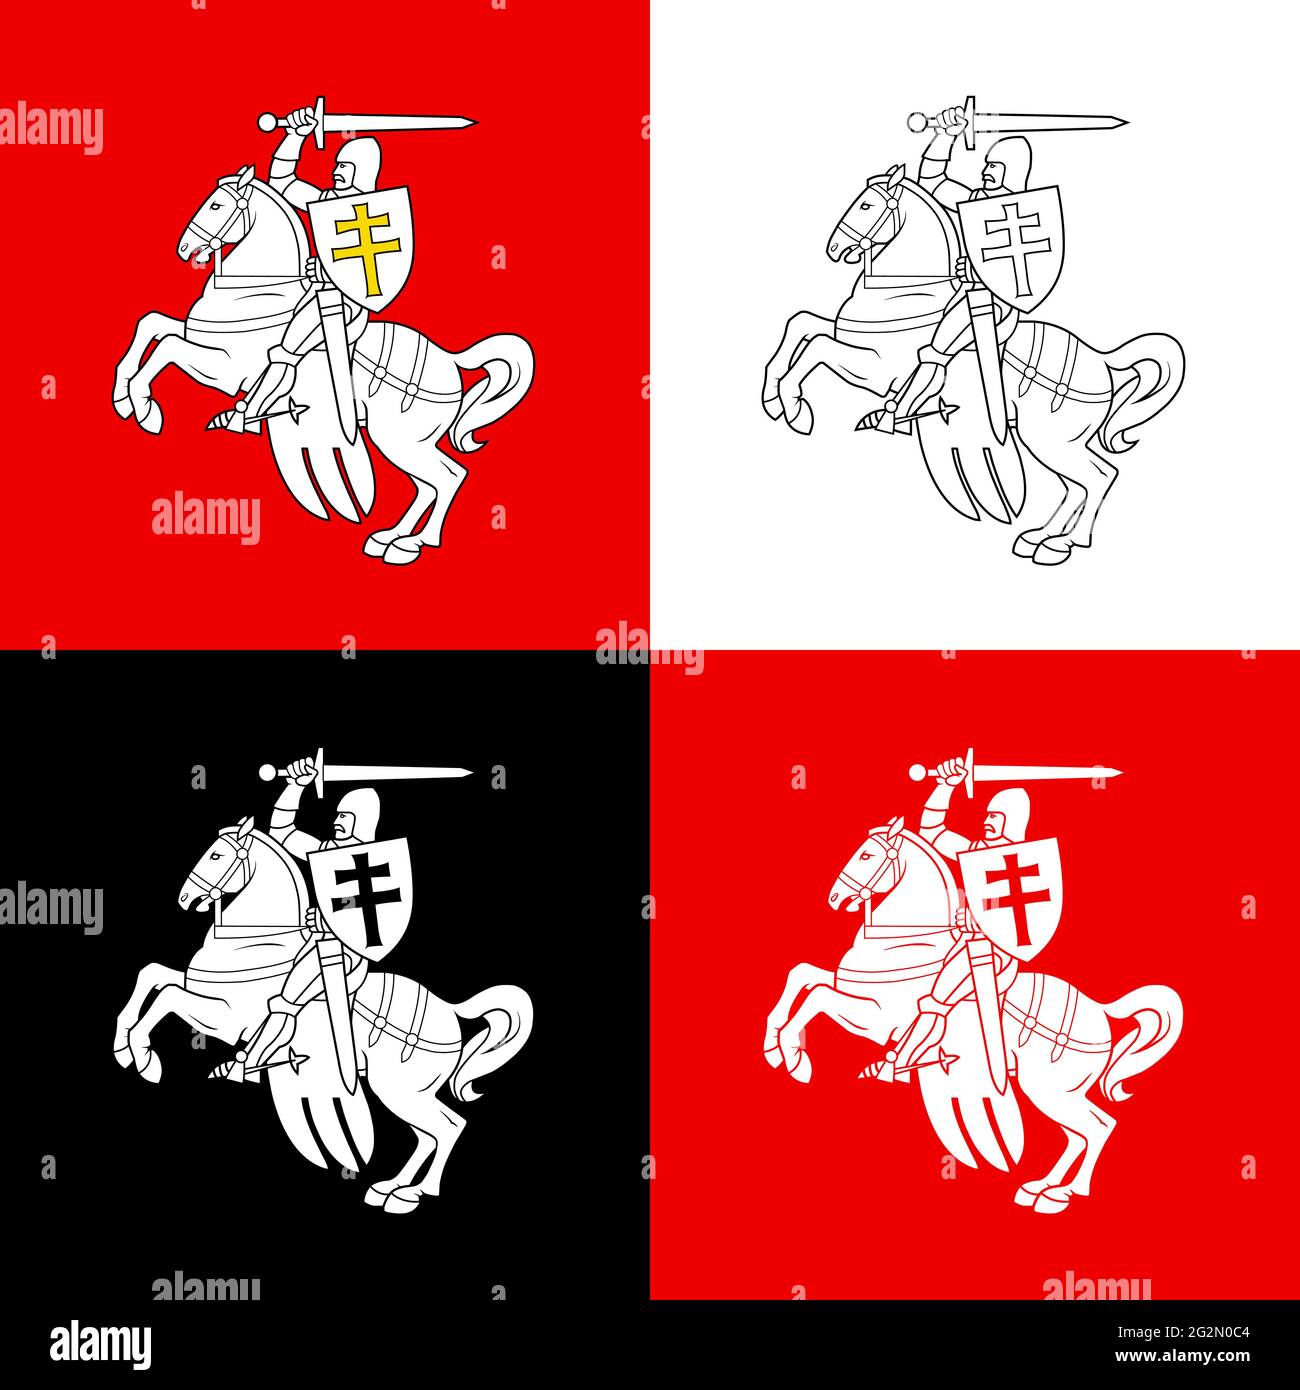 Die Varianten der Bilder des Reiters auf dem Pferd aus dem Wappen der Republik Weißrussland in 1991 - 1994. Vektorgrafik. Stock Vektor